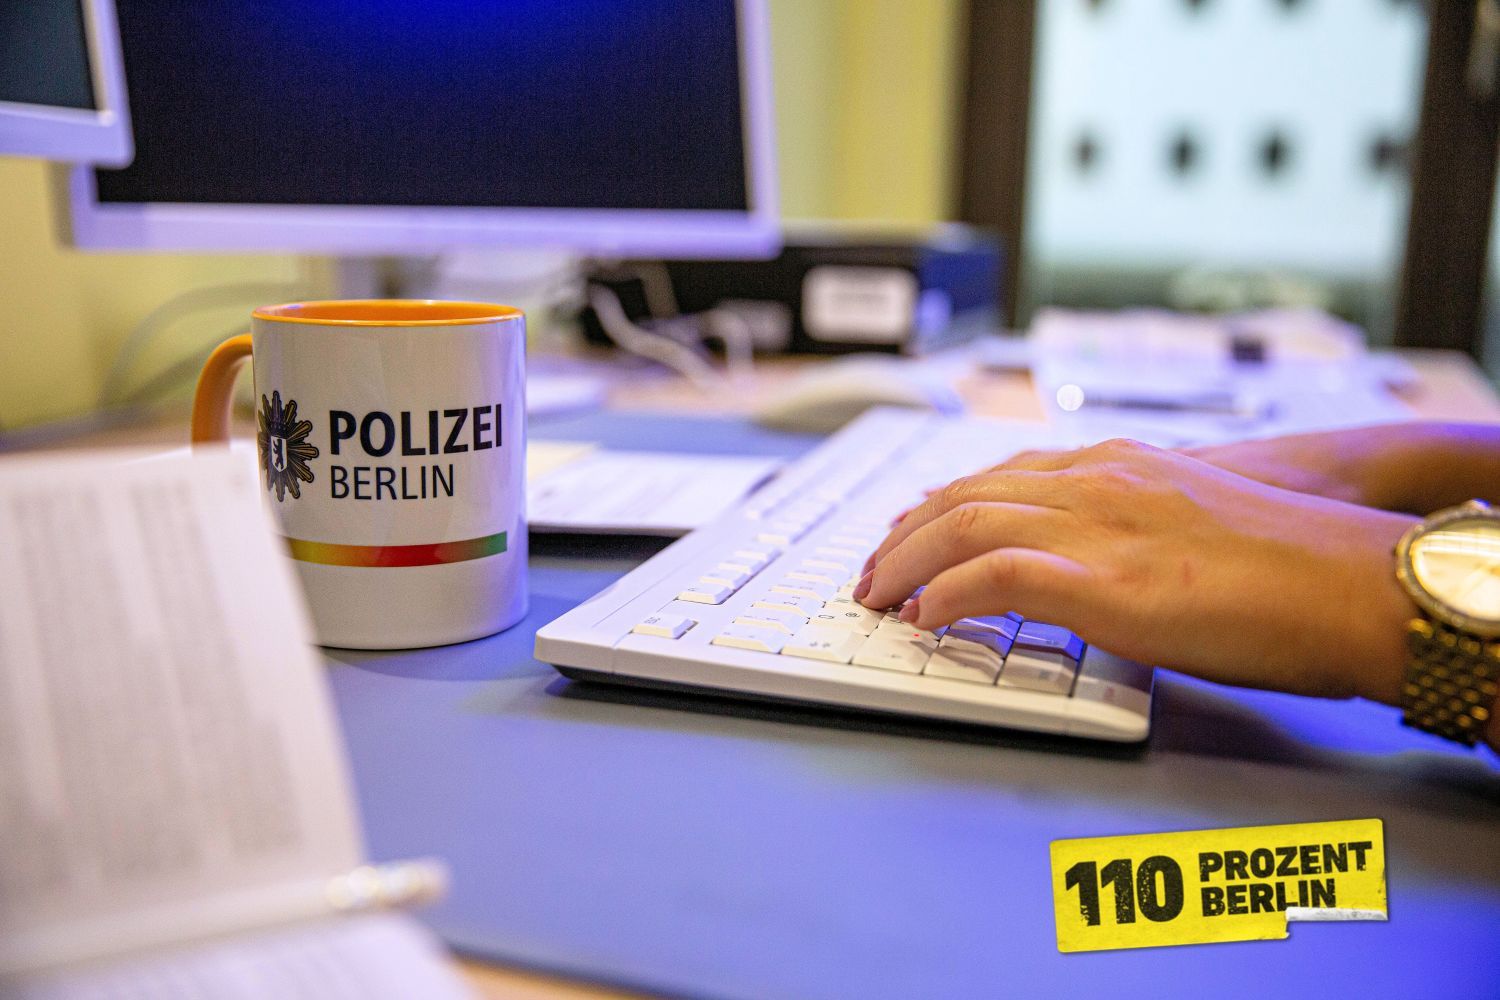 Hände auf einer Tastatur, davor eine Tasse mit Word-Bild-Marke Polizei BErlin